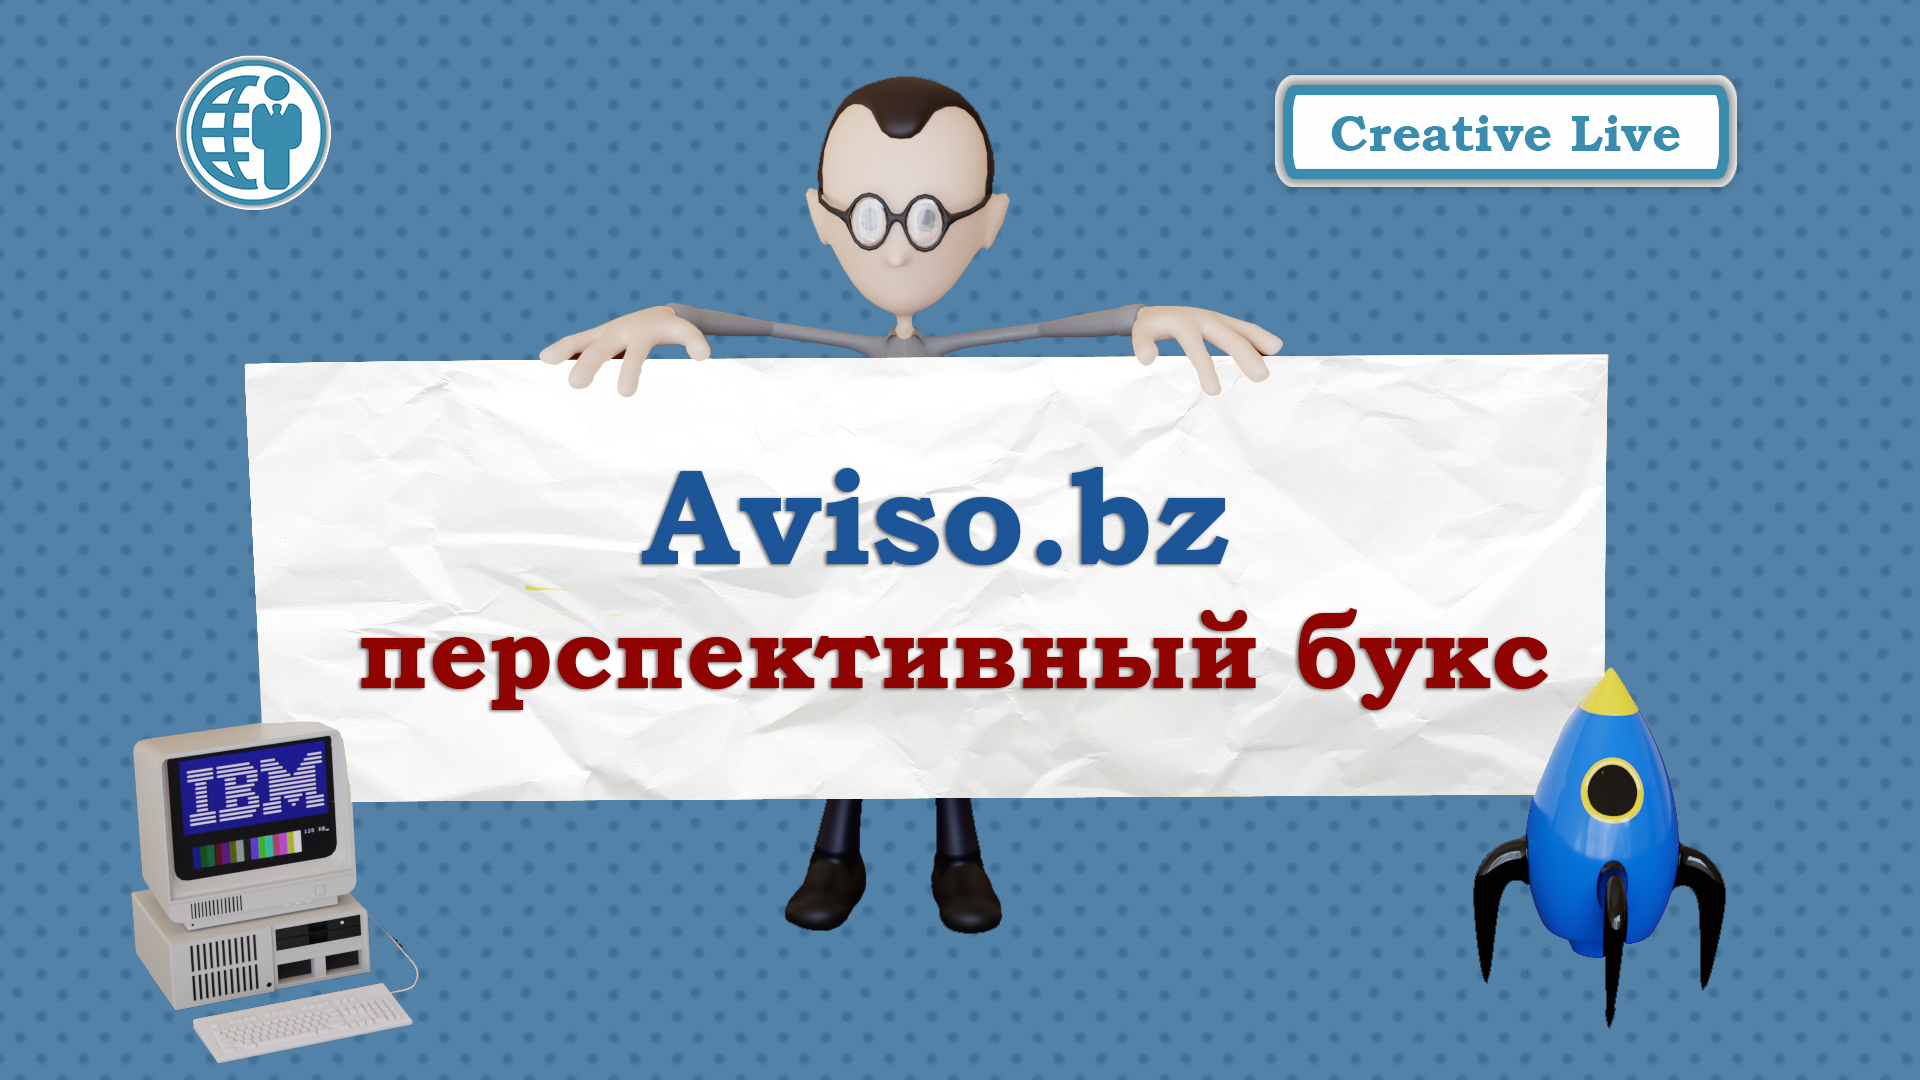 Aviso.bz -перспективный букс для заработка в Интернете. Как заработать на буксах